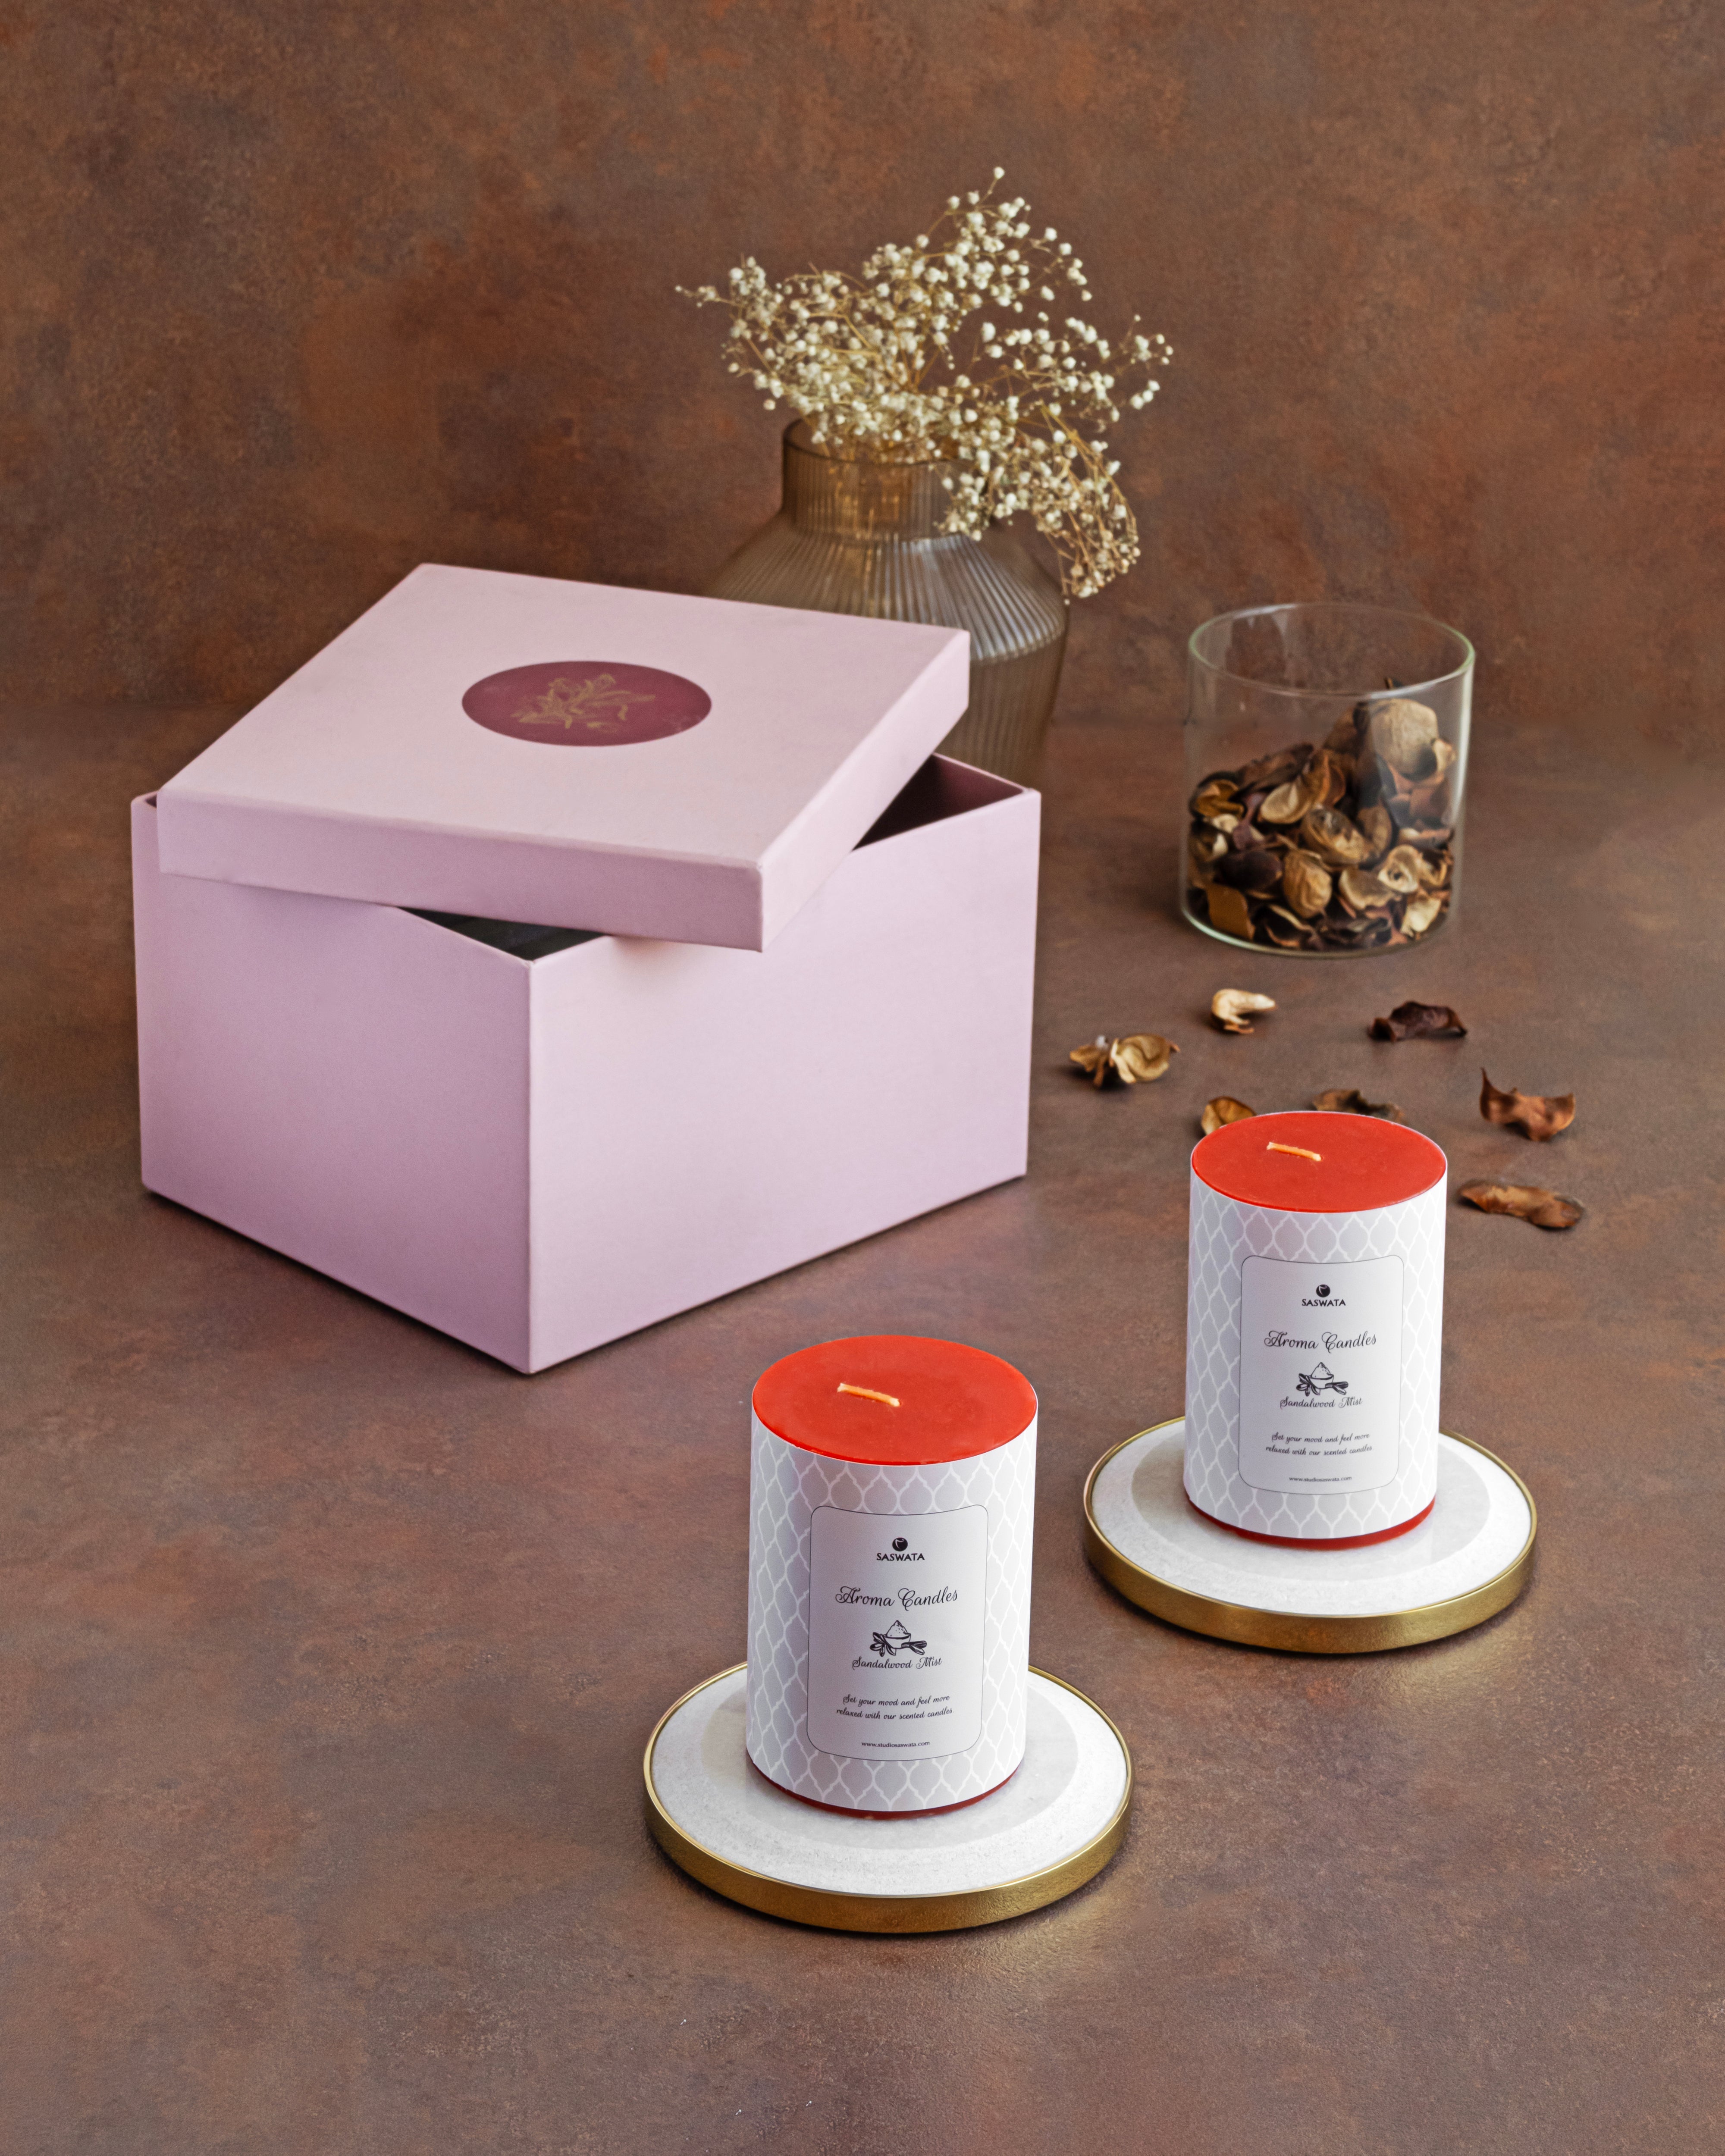 Yang Candles Plates + Aroma Candles _ Gift Box